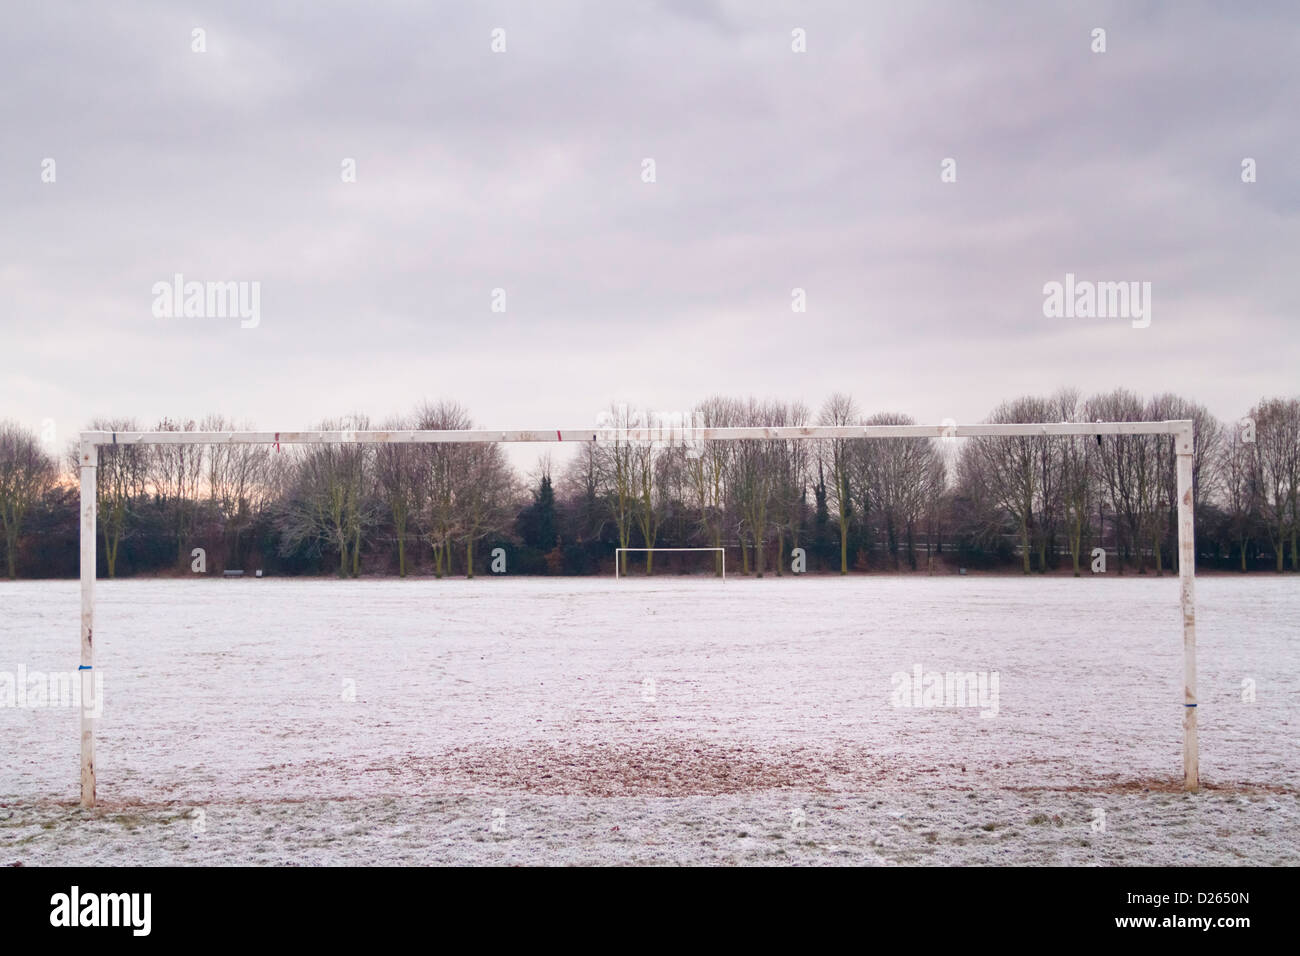 Torpfosten auf leeren Fußballplatz auf einer schneebedeckten öffentlichen Park am Ende eines kalten Wintertag, Nottinghamshire, England, Großbritannien Stockfoto